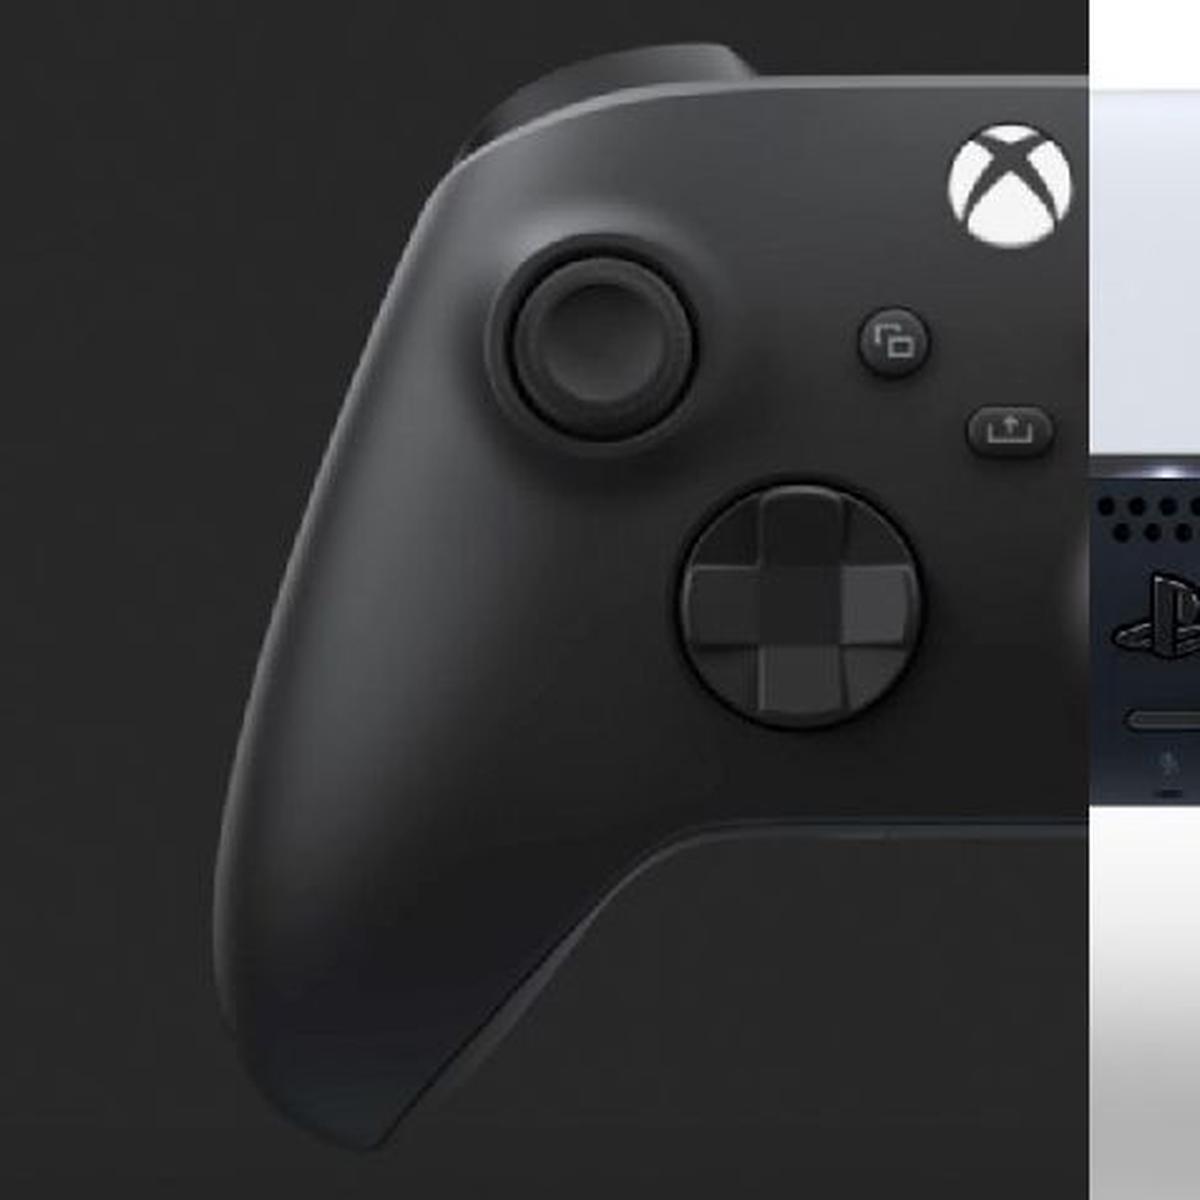 Cómo jugar con iPhone usando mando de PlayStation 5 o Xbox Series X